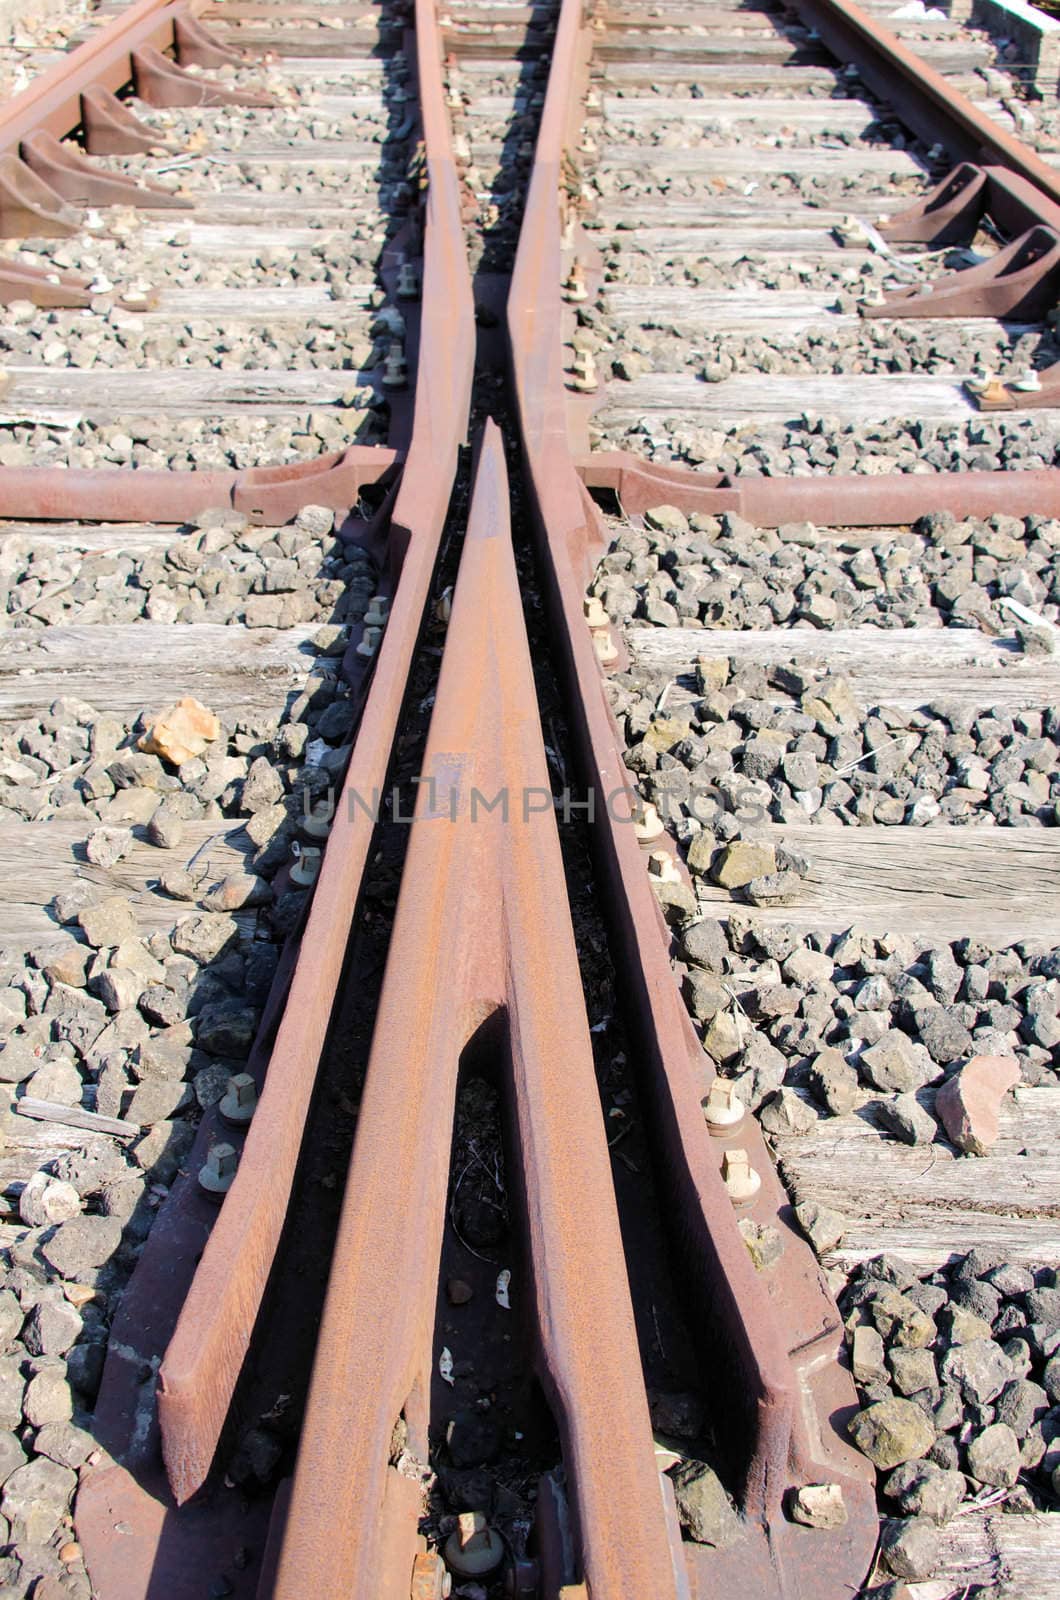 track  railway by njaj